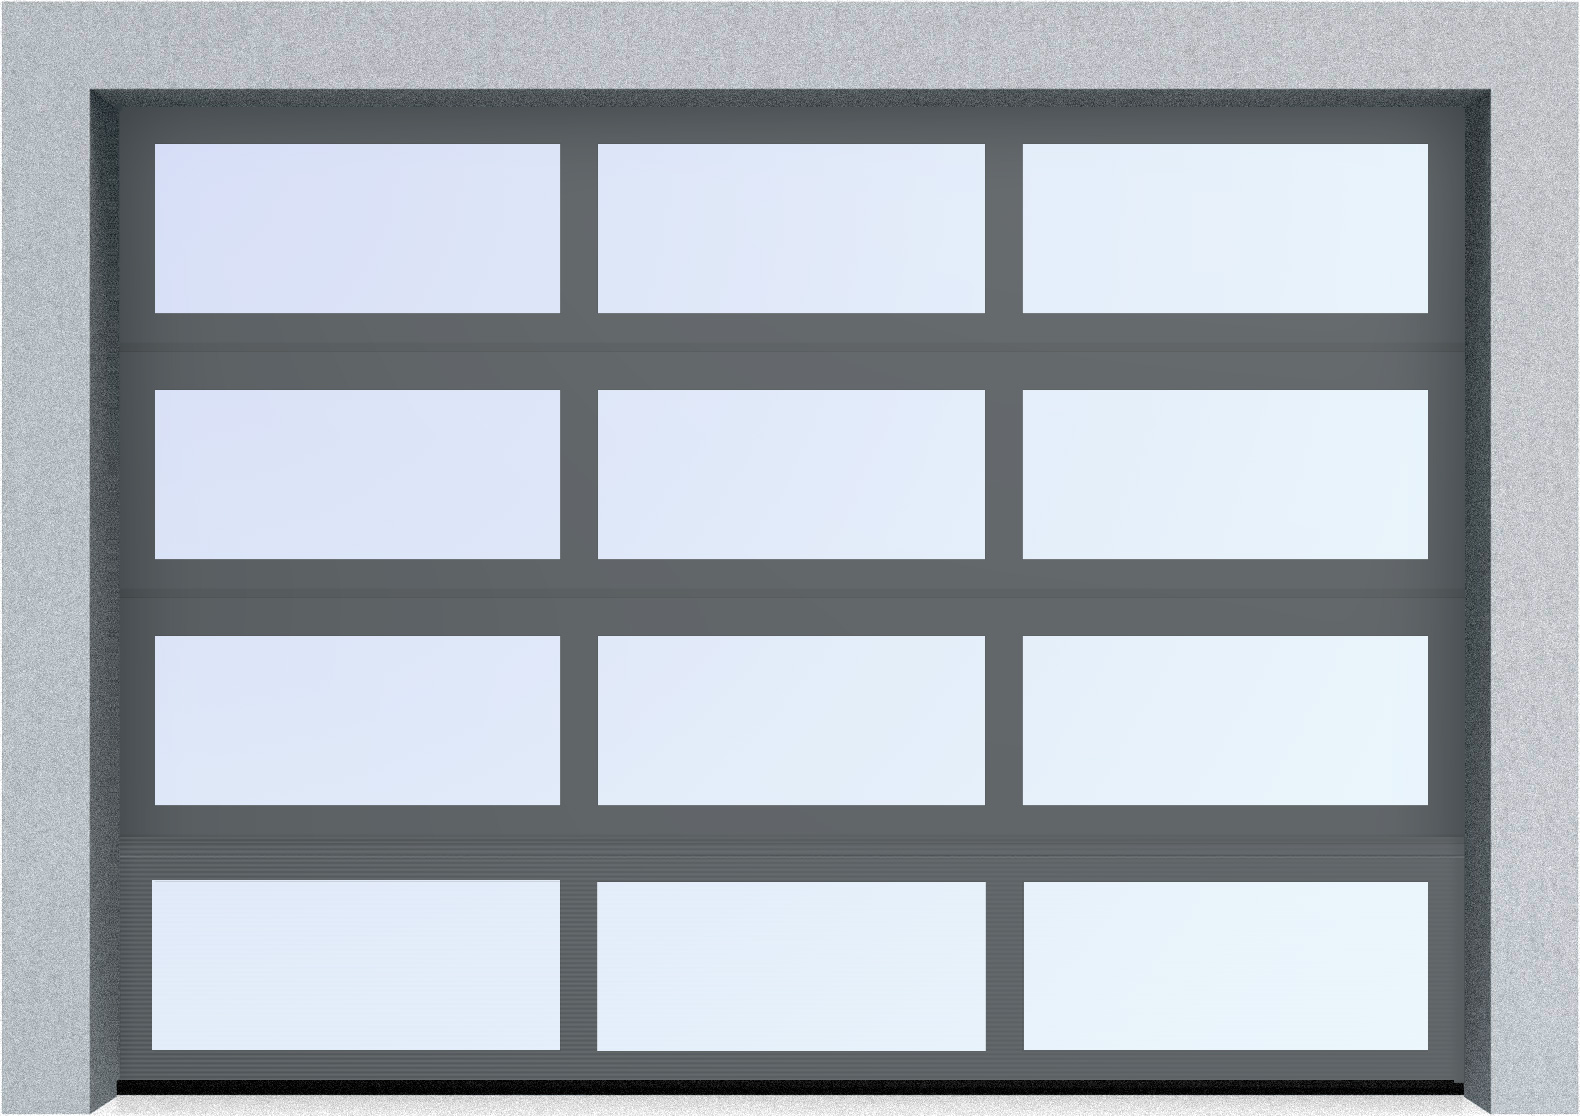  Секционные панорамные ворота серии AluTrend (АЛП) 2125х2250 нижняя панель стандартные цвета, фото 5 